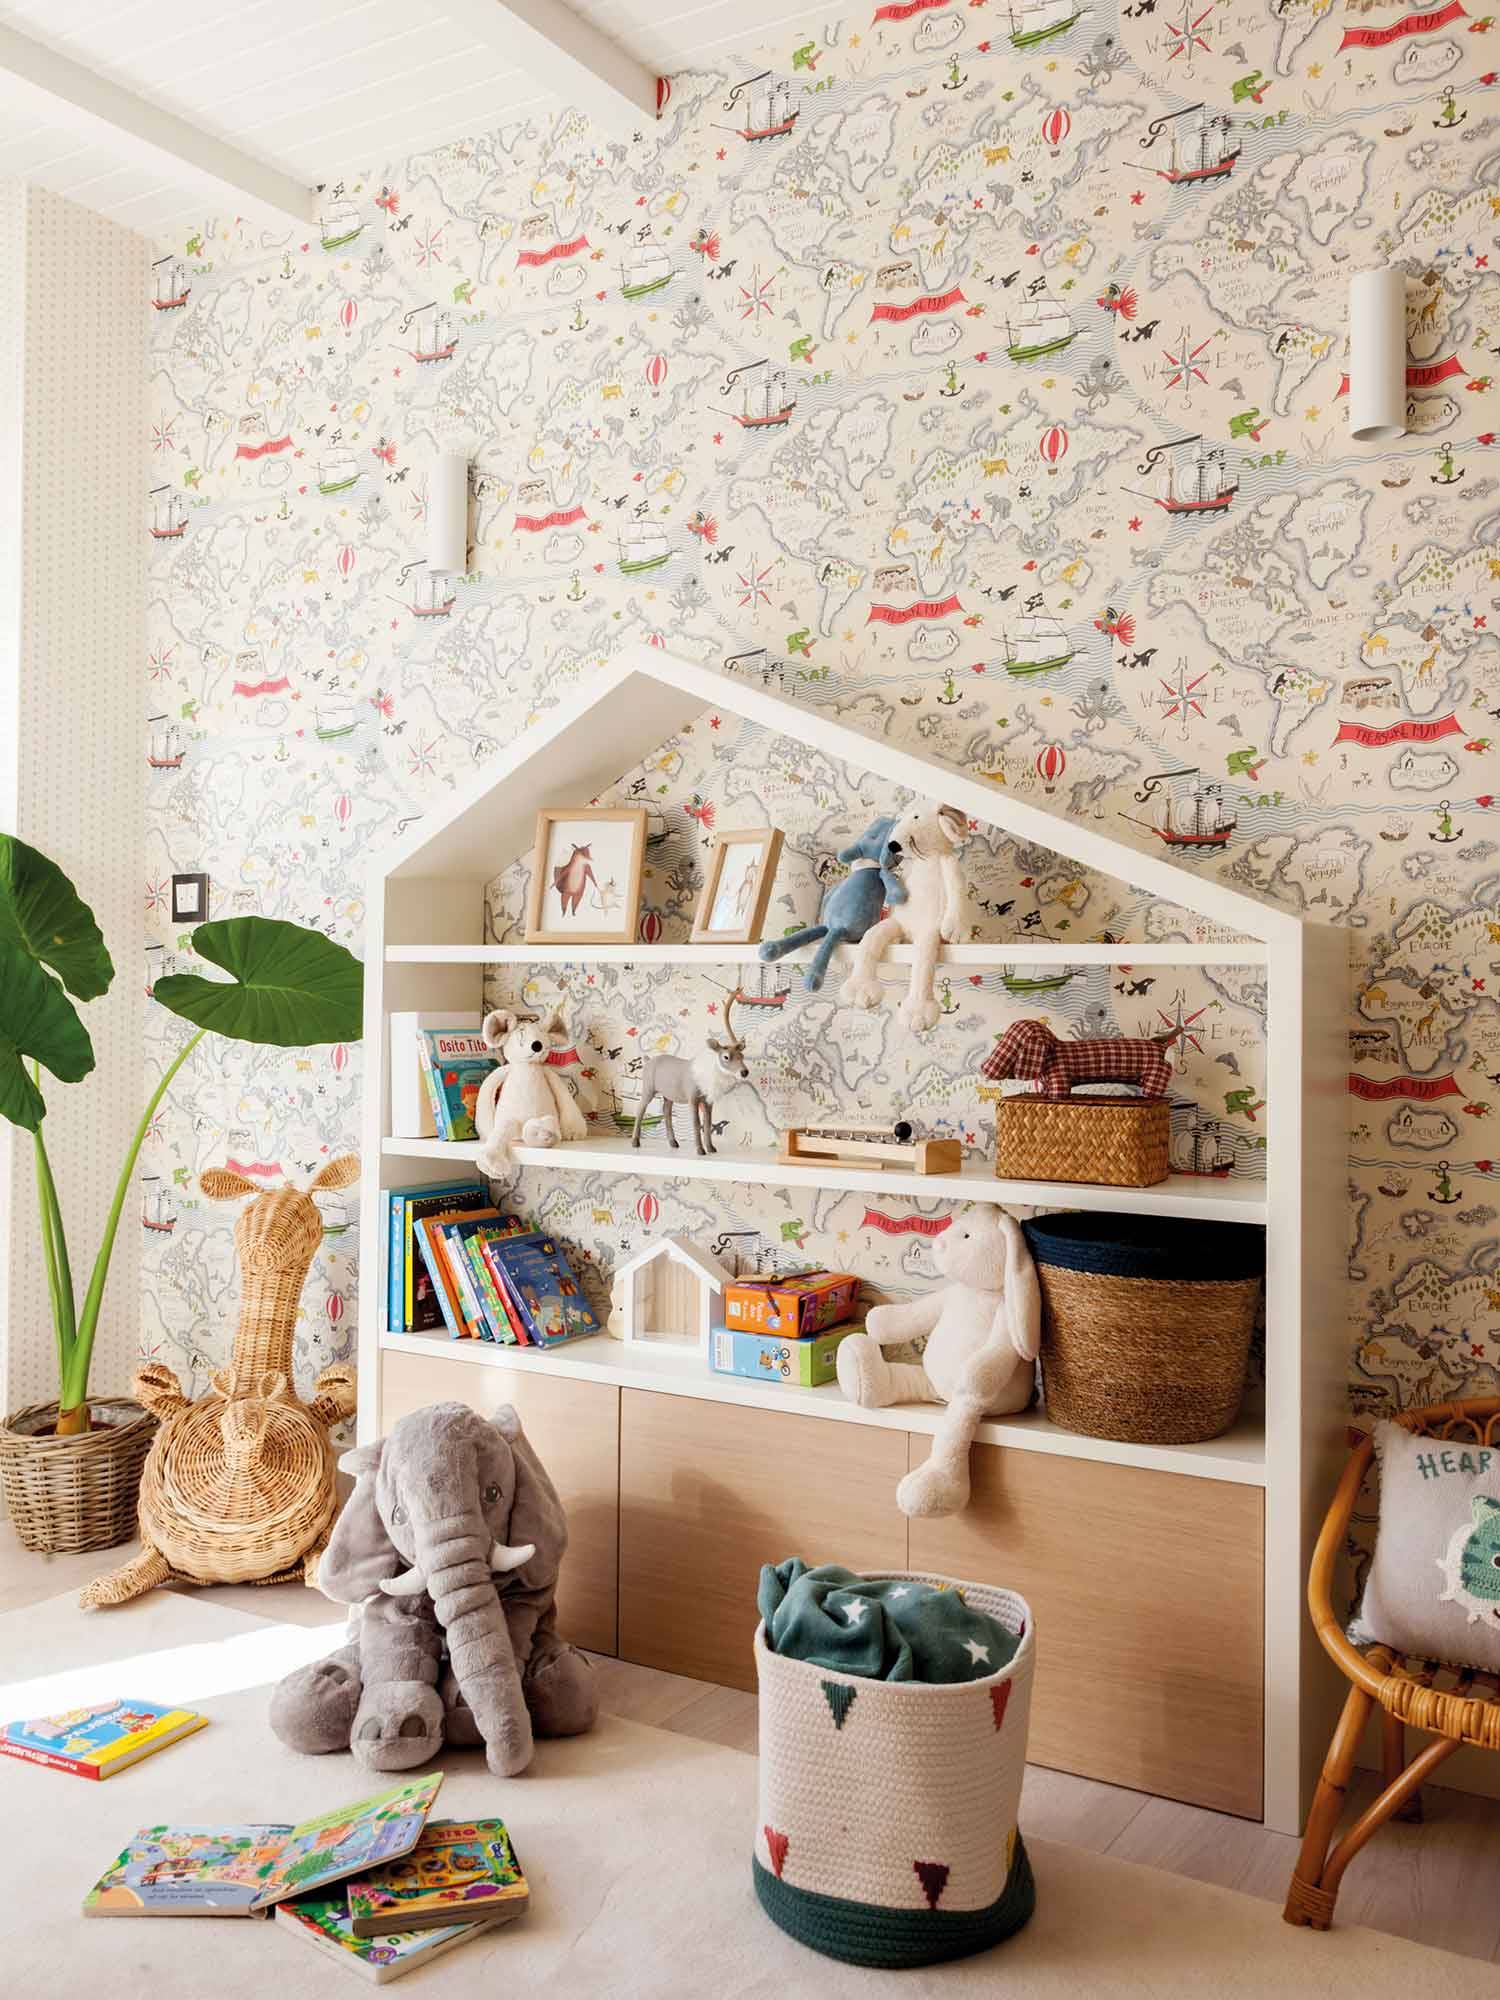 Dormitorio infantil decorado con estantería en forma de casita.